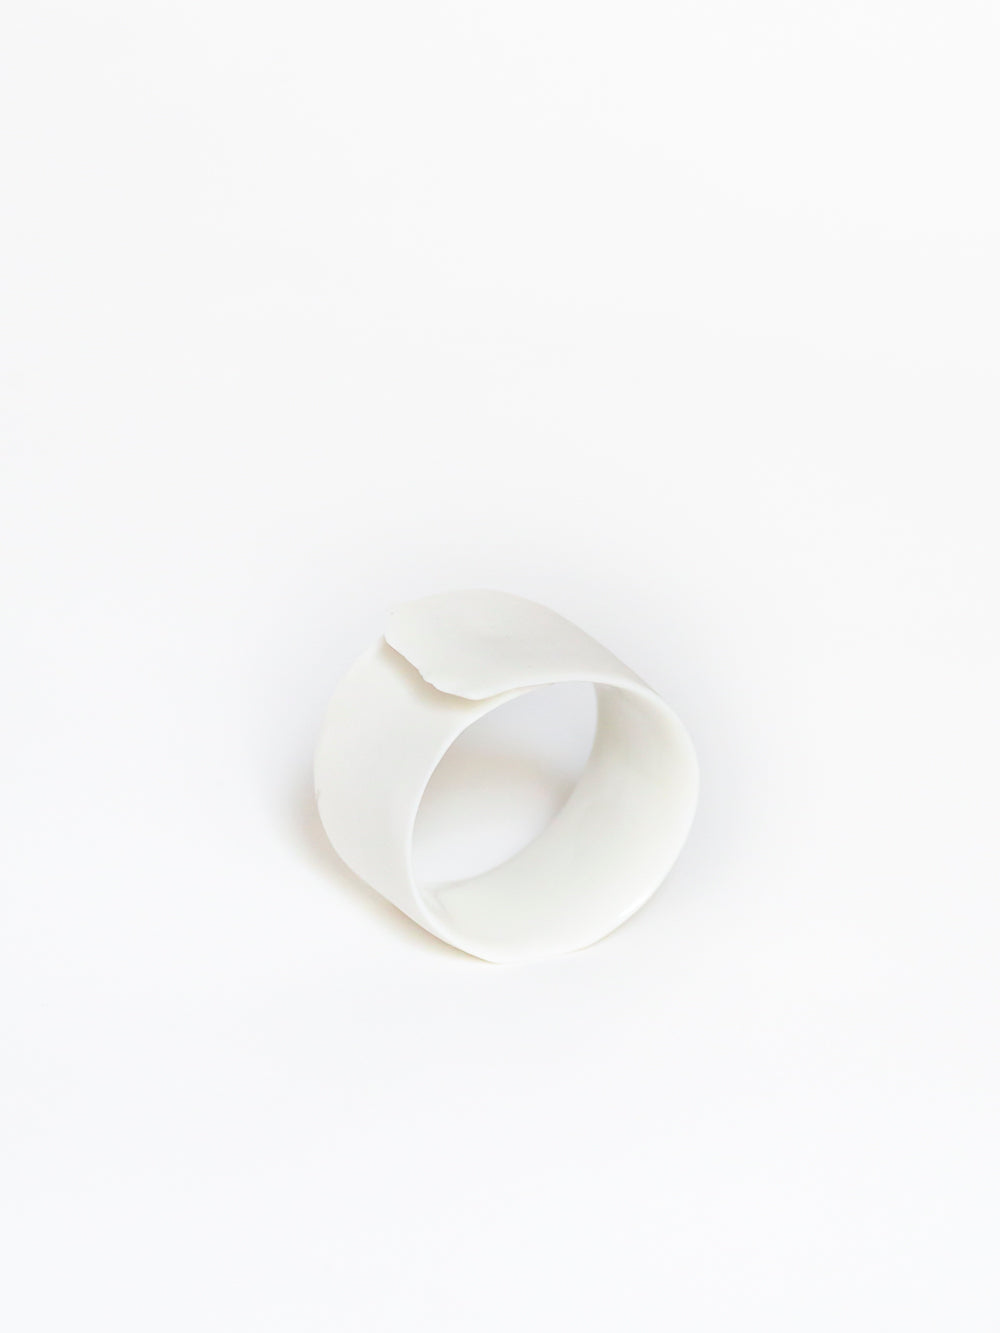 ARK 4 napkin ring